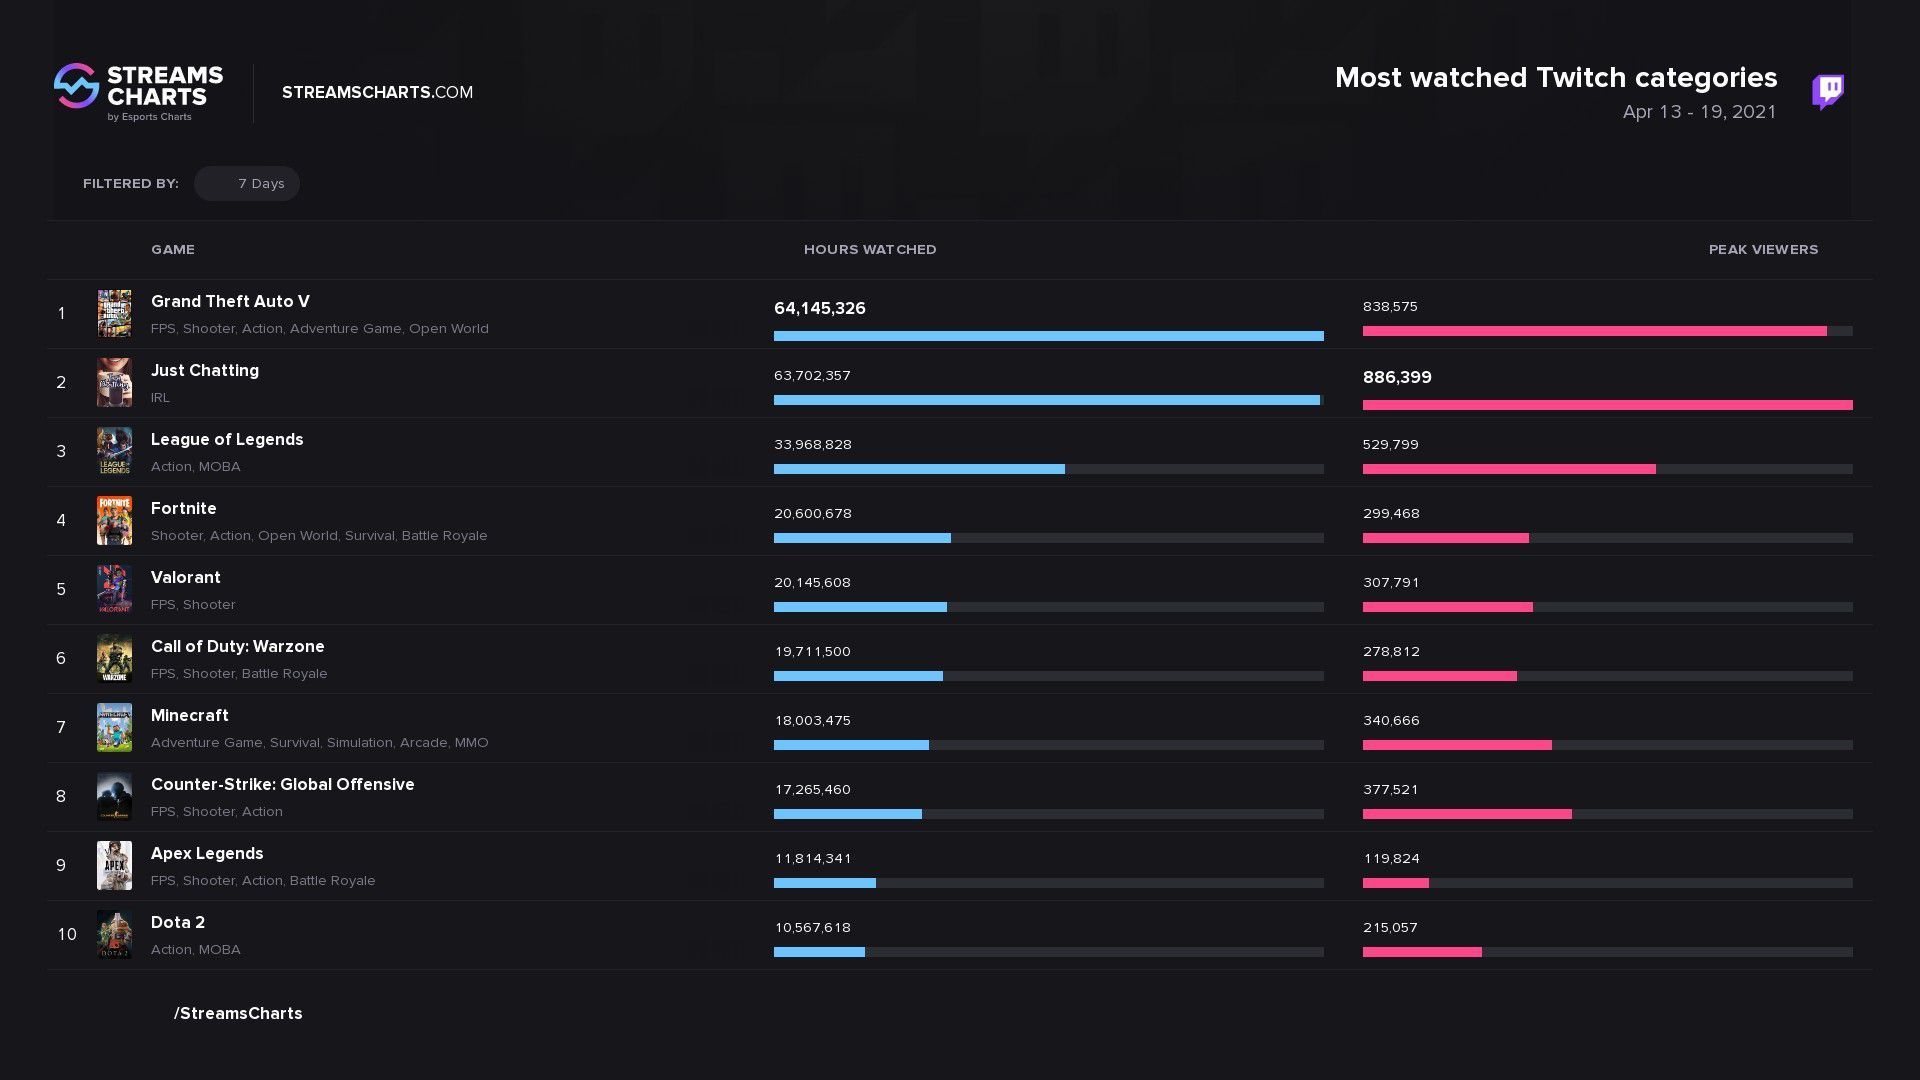 Самые популярные категории на Twitch по итогам периода с 13 по 19 апреля